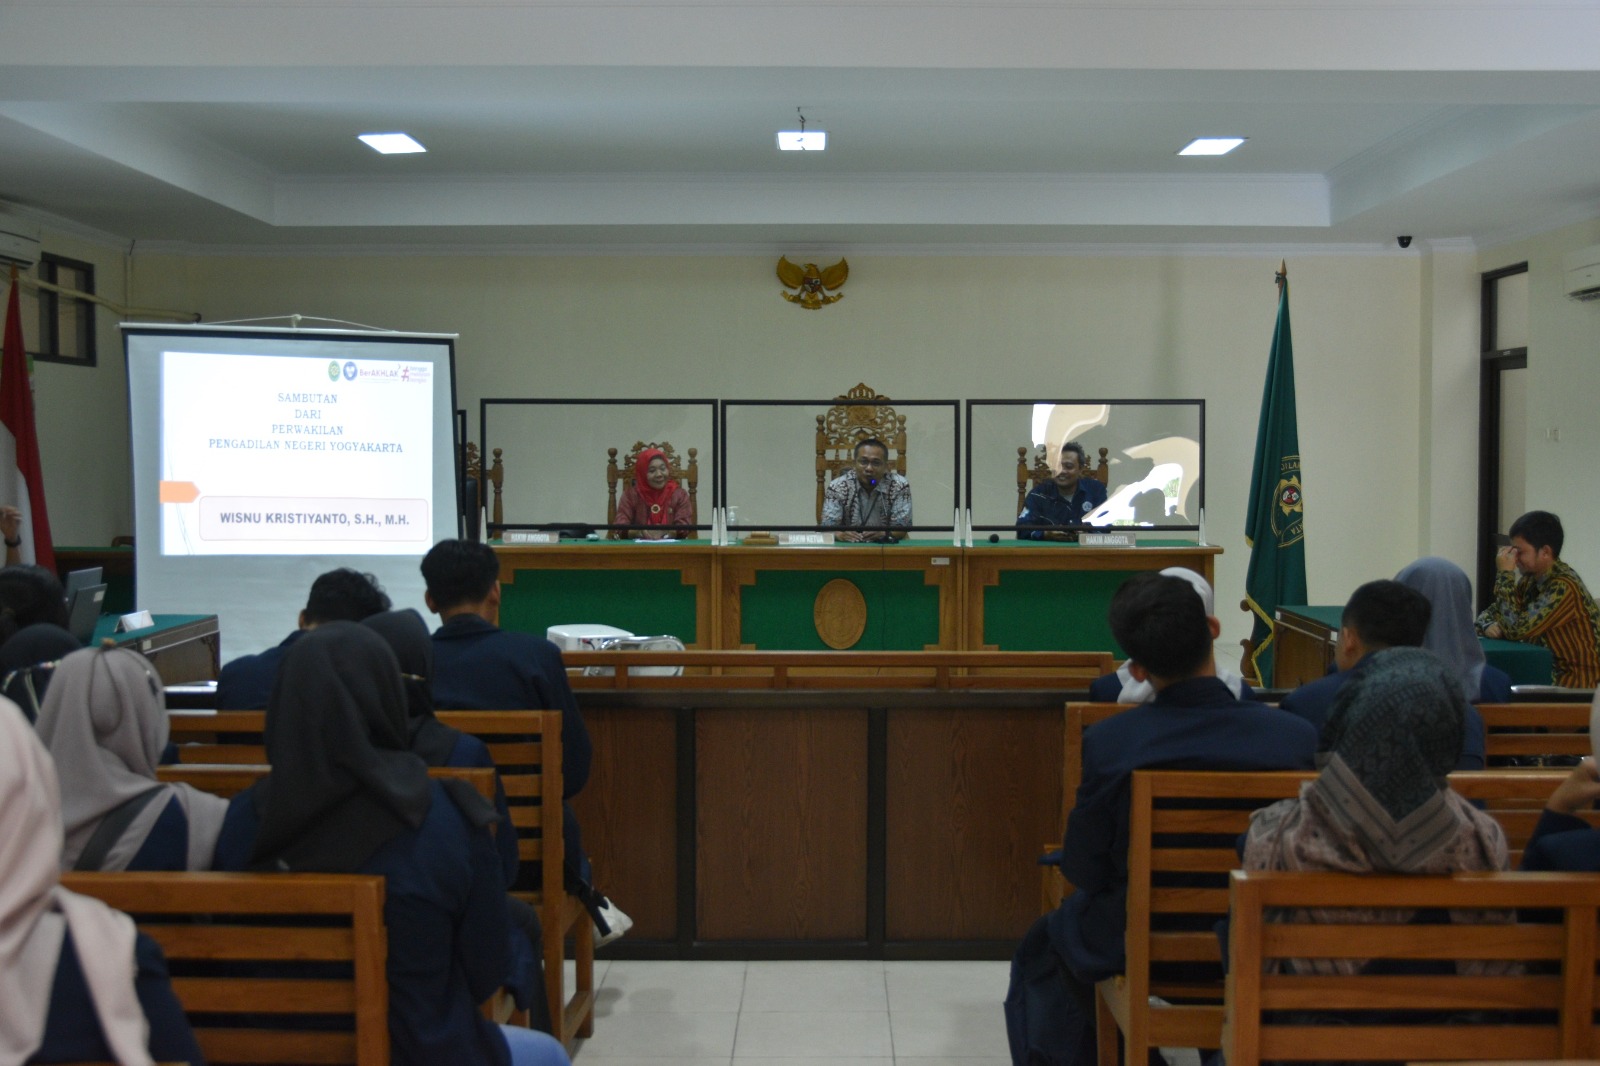 Kunjungan Belajar Fakultas Hukum Universitas Islam Batik Surakarta di Pengadilan Negeri Yogyakarta